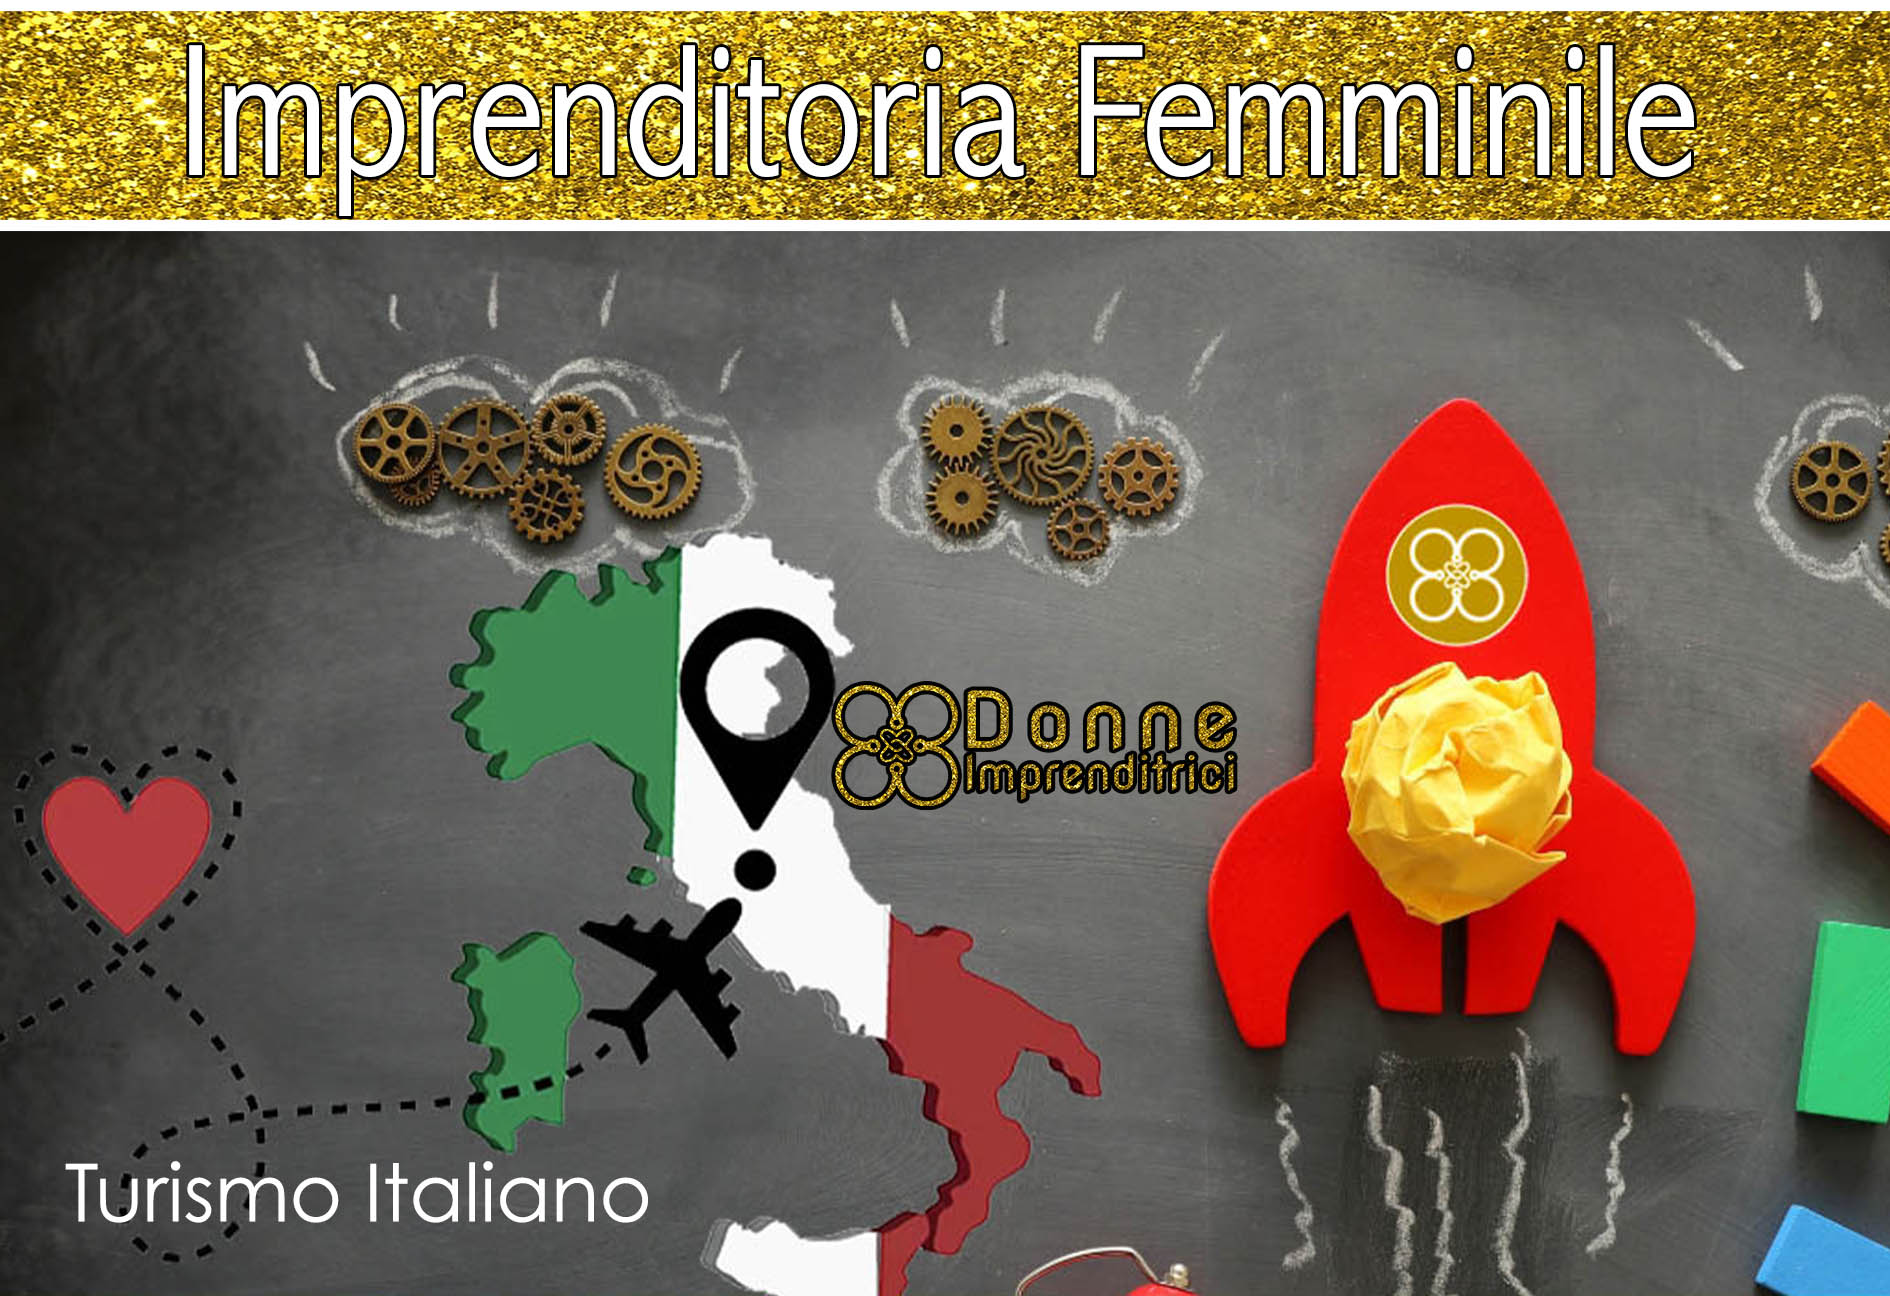 Donne al Comando del Turismo Italiano: Il Boom dell’Imprenditoria Femminile che Sta Cambiando le Regole del Gioco!